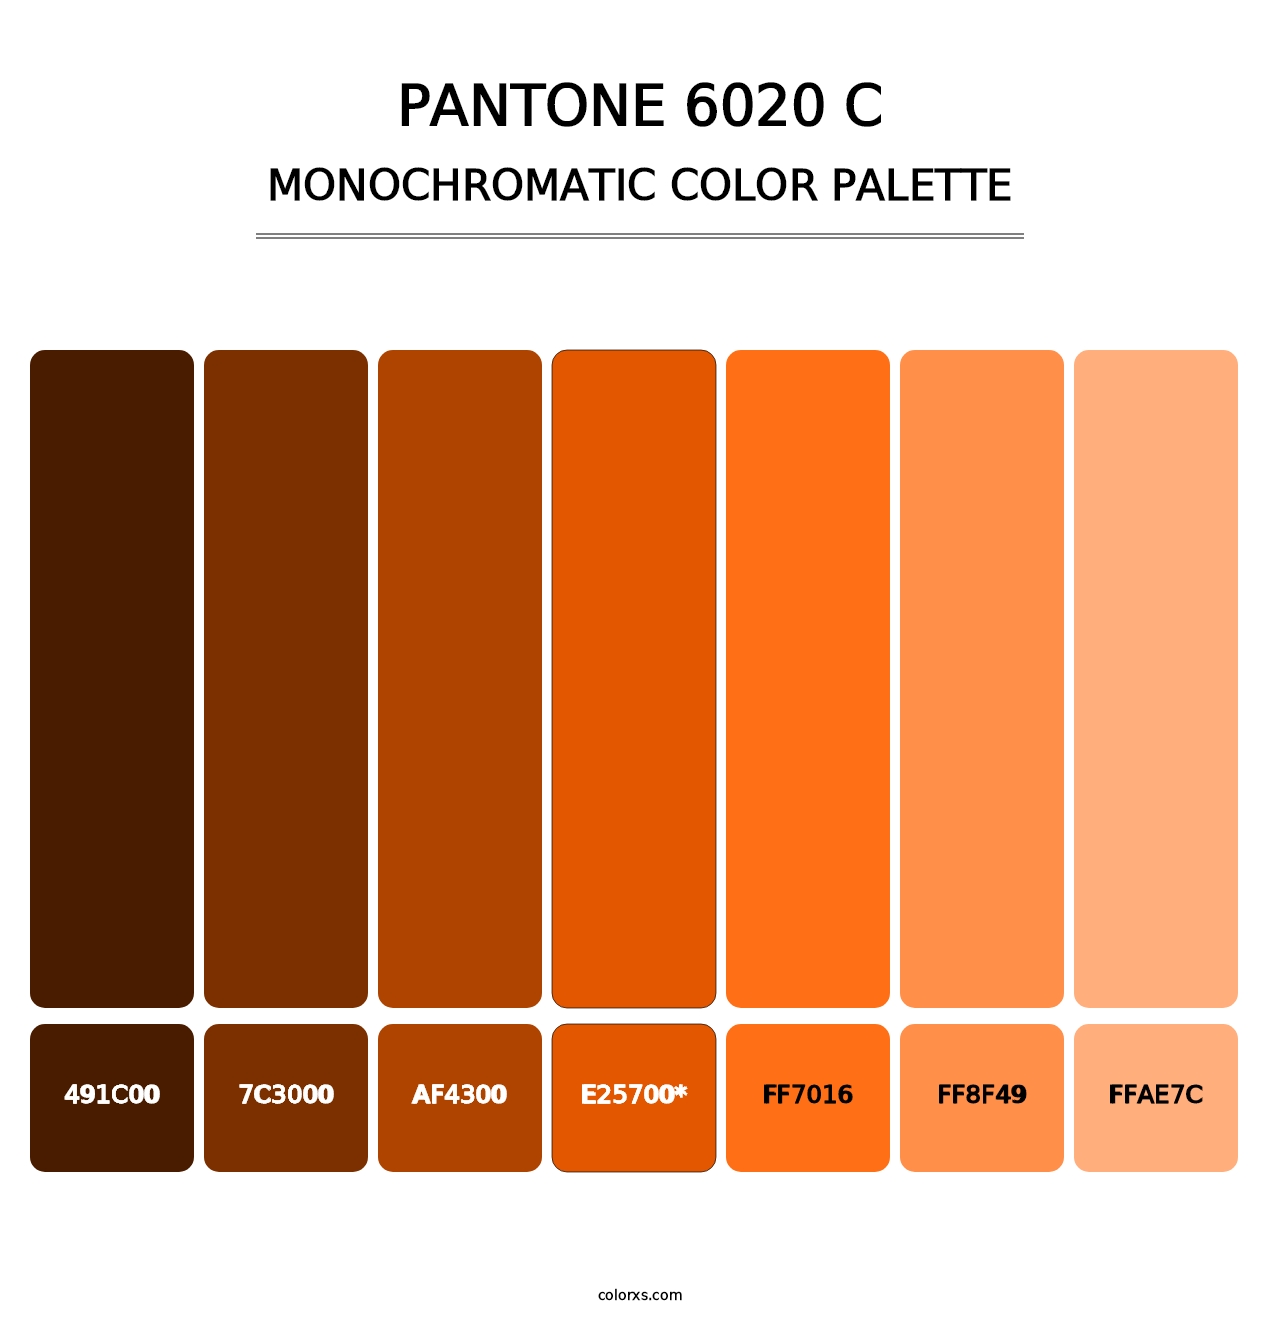 PANTONE 6020 C - Monochromatic Color Palette